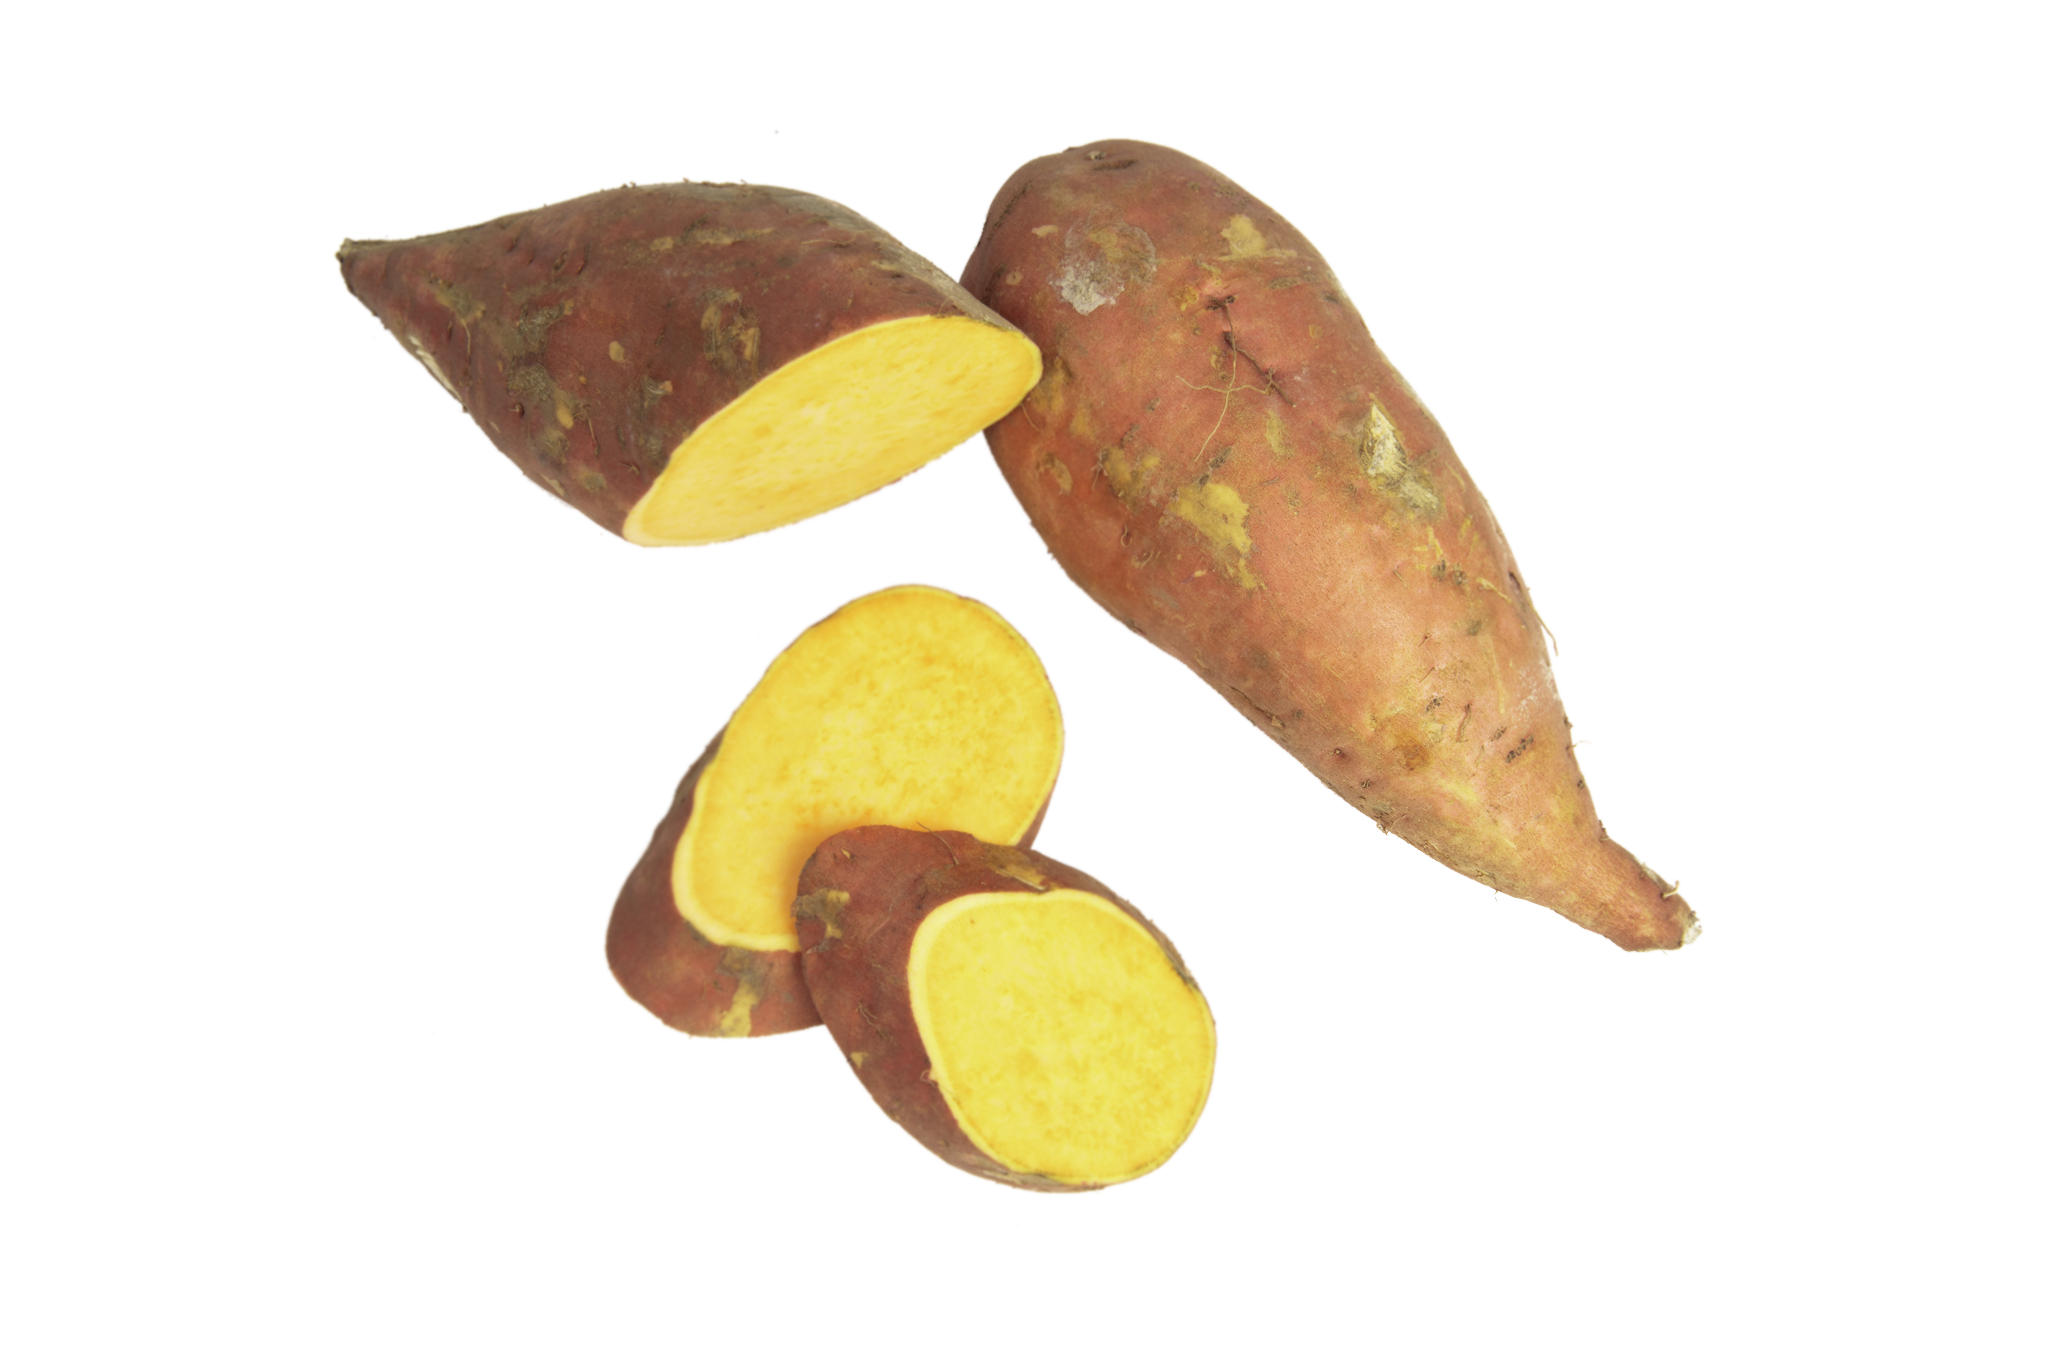 Rode Indonesische zoete aardappel (Cilembu)